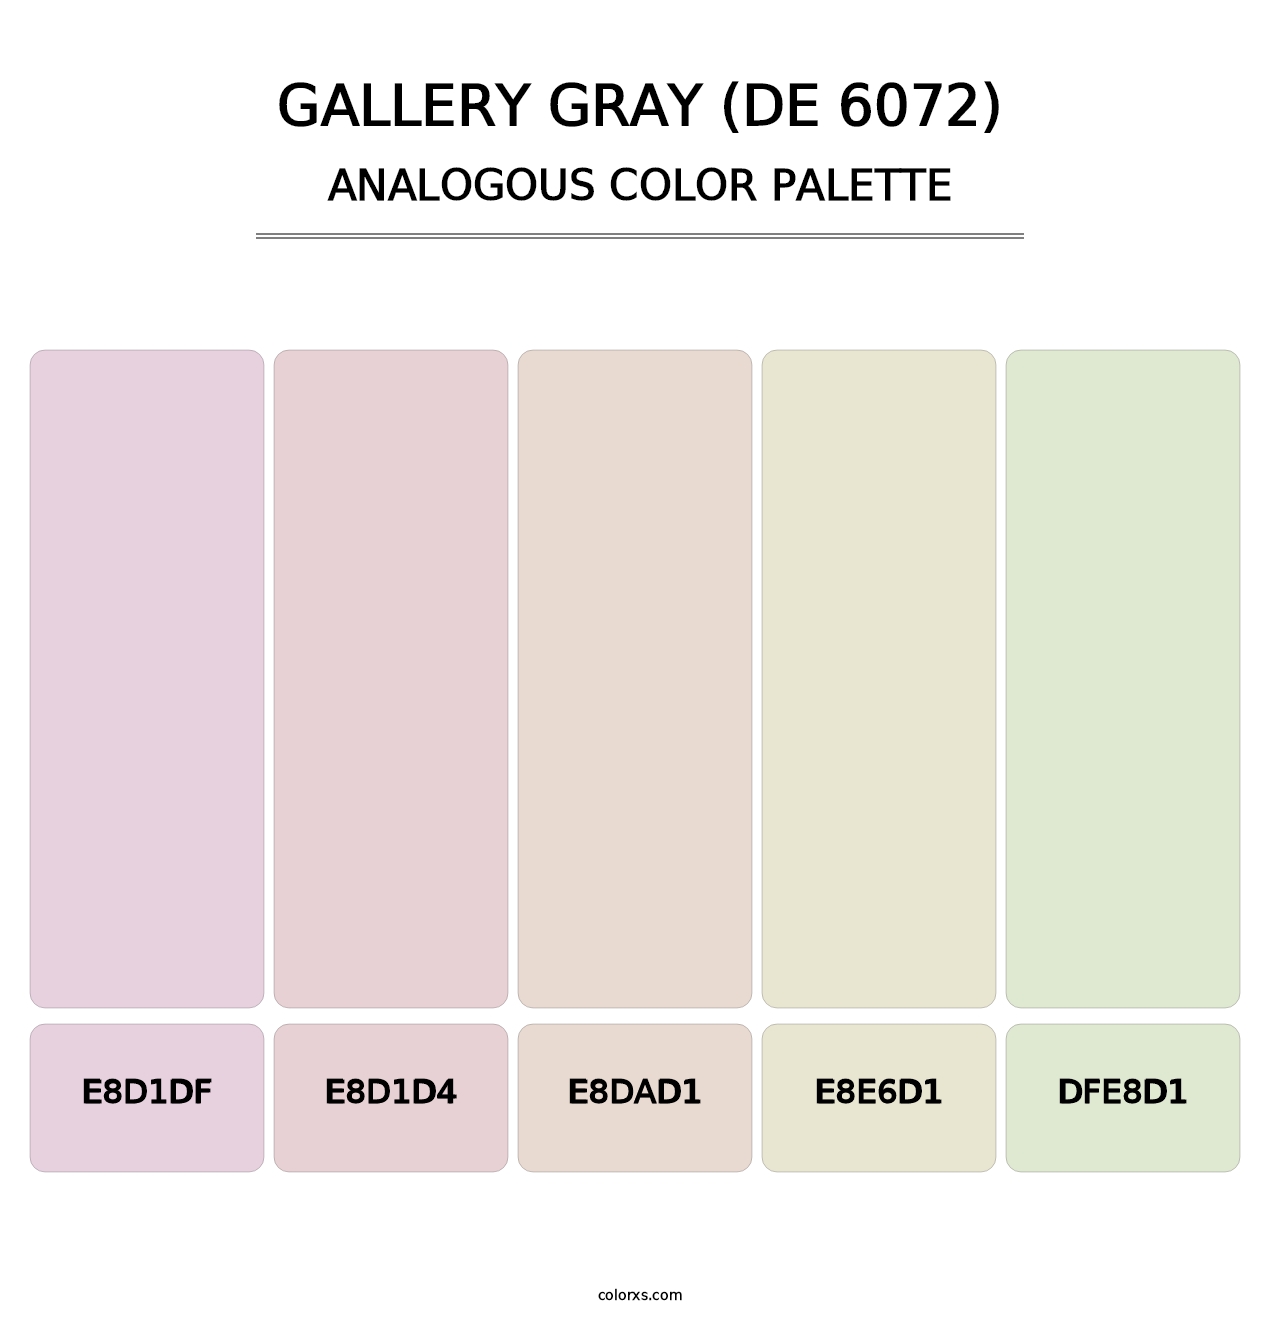 Gallery Gray (DE 6072) - Analogous Color Palette